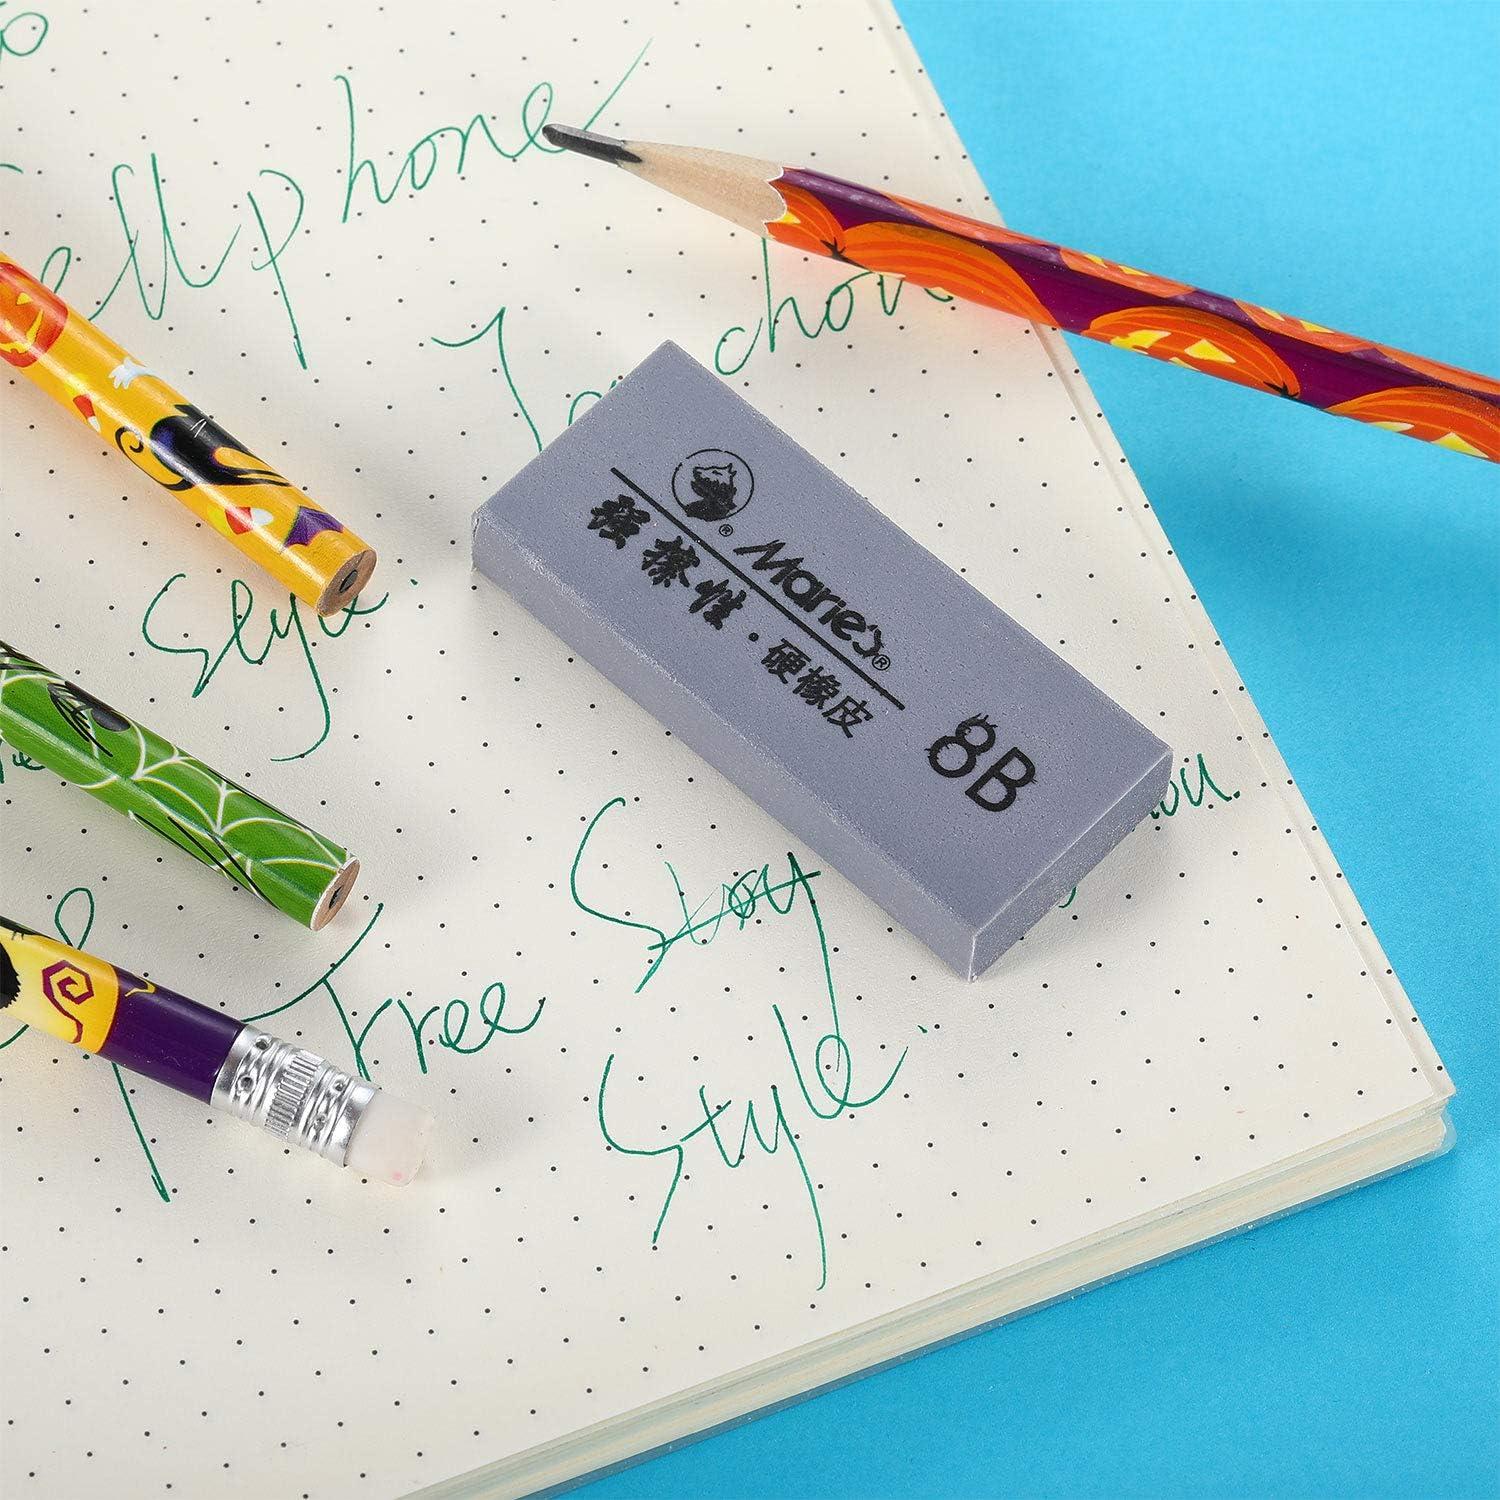 Art gum 925 11 - Gum eraser and cleaner